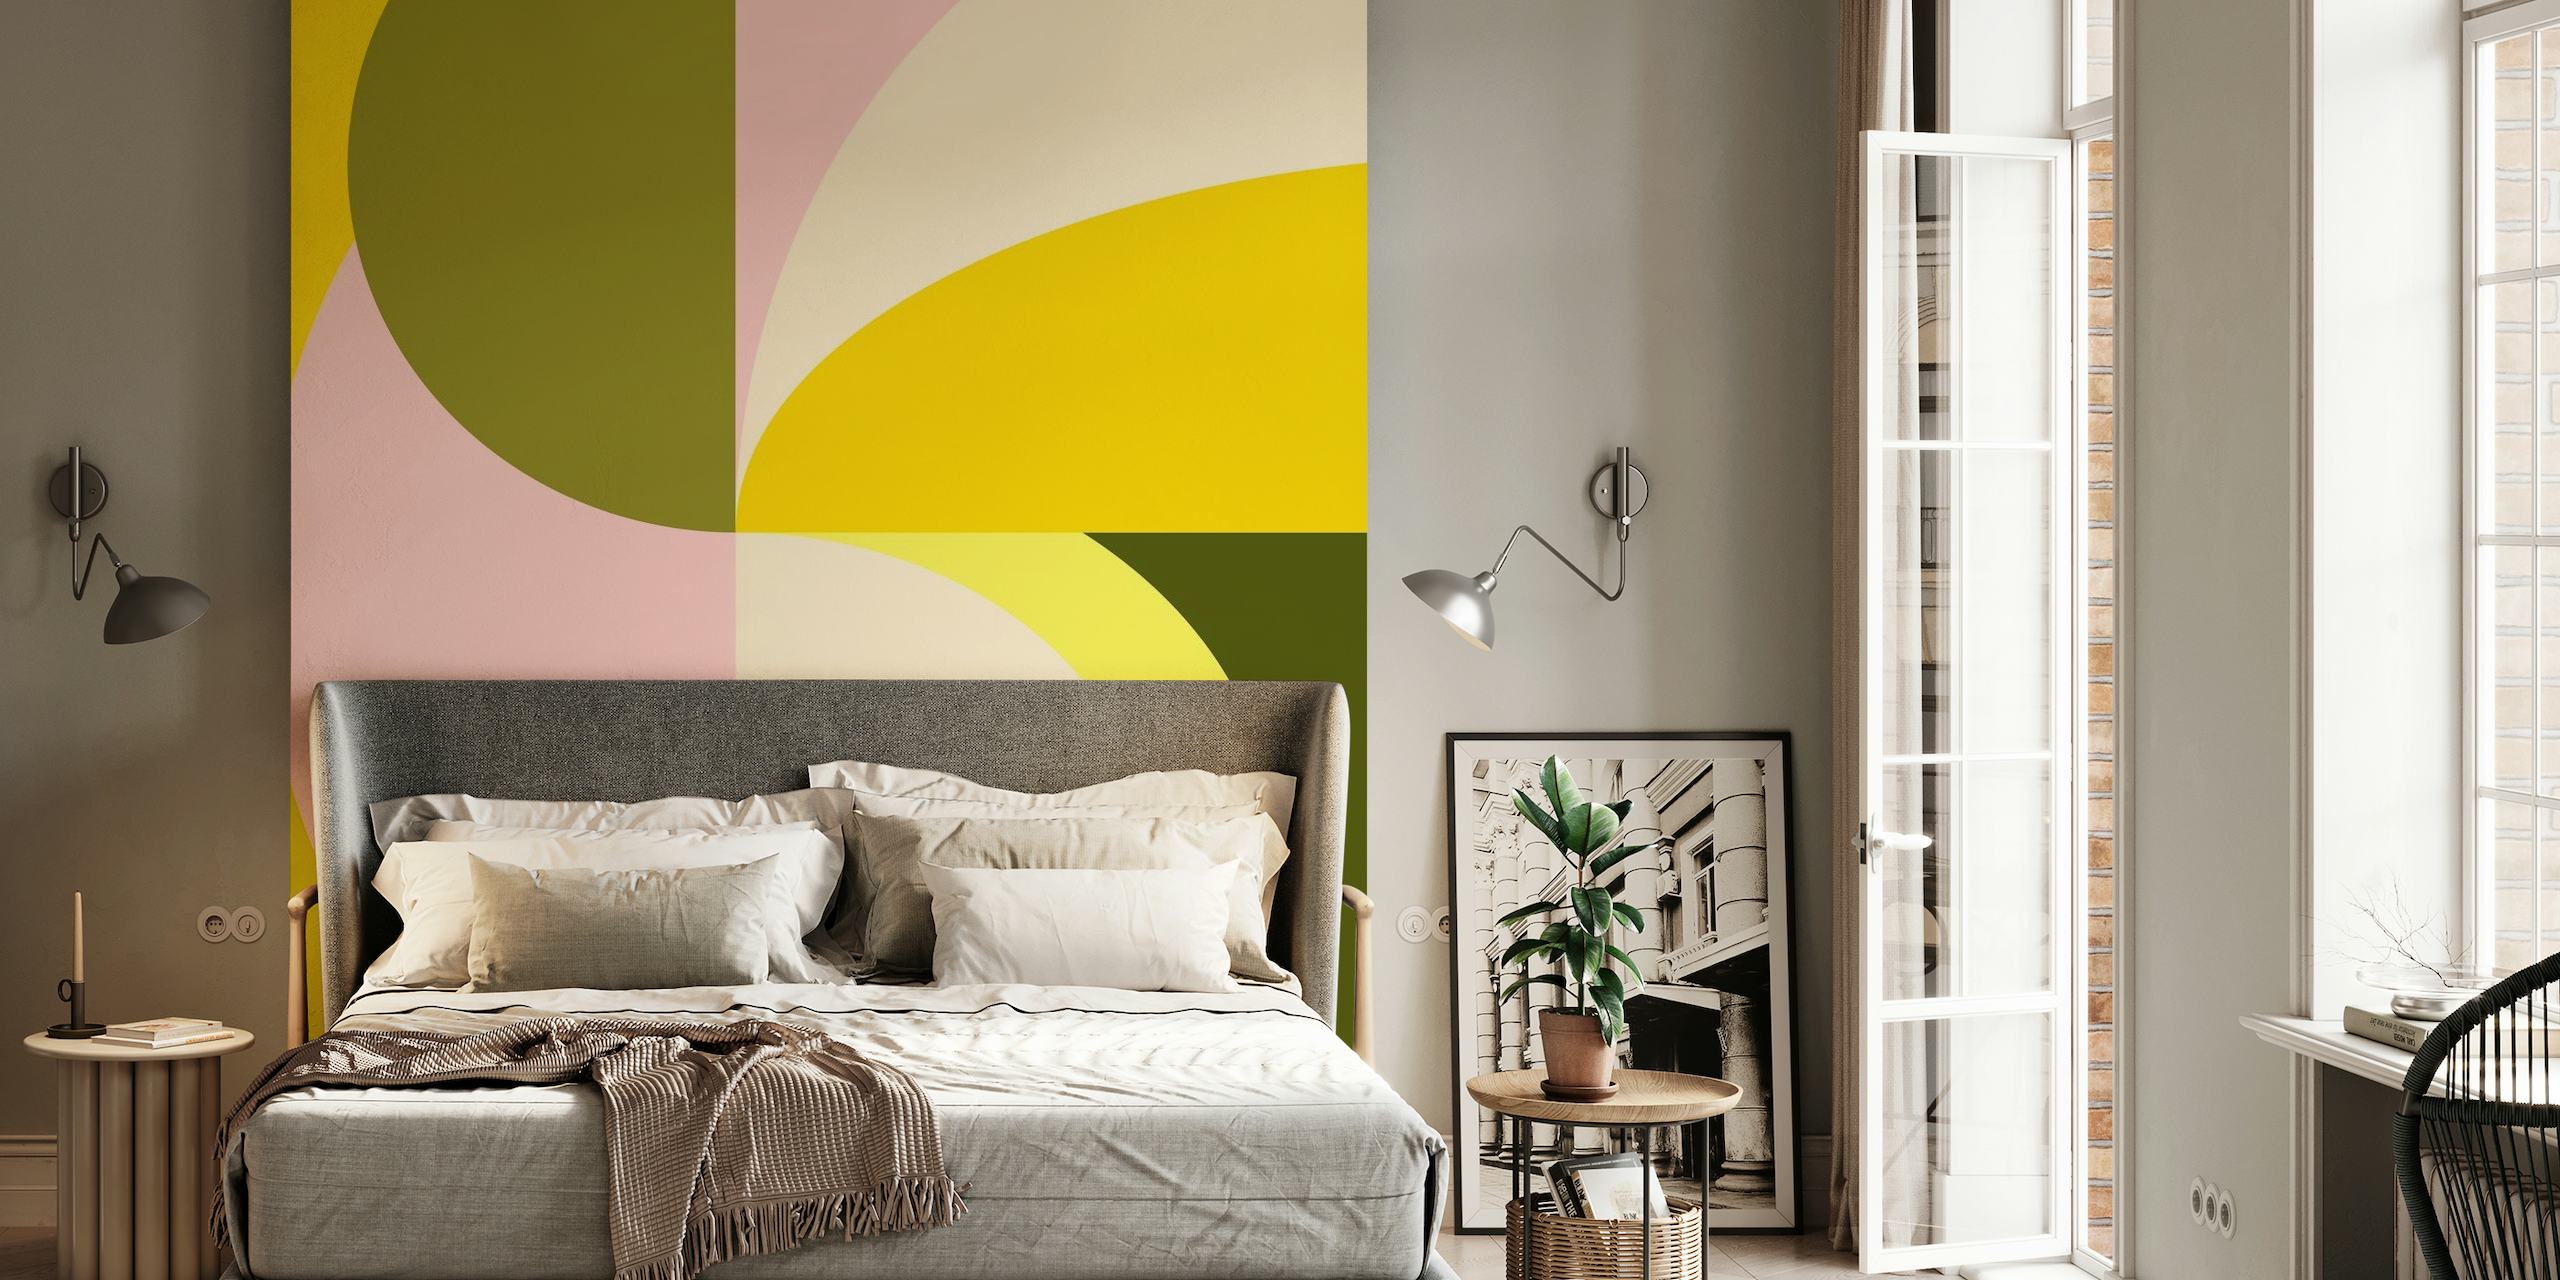 Abstrakteja geometrisia muotoja sisältävä seinämaalaus sitrusväreillä, kuten keltaisella, vaaleanpunaisella ja vihreällä